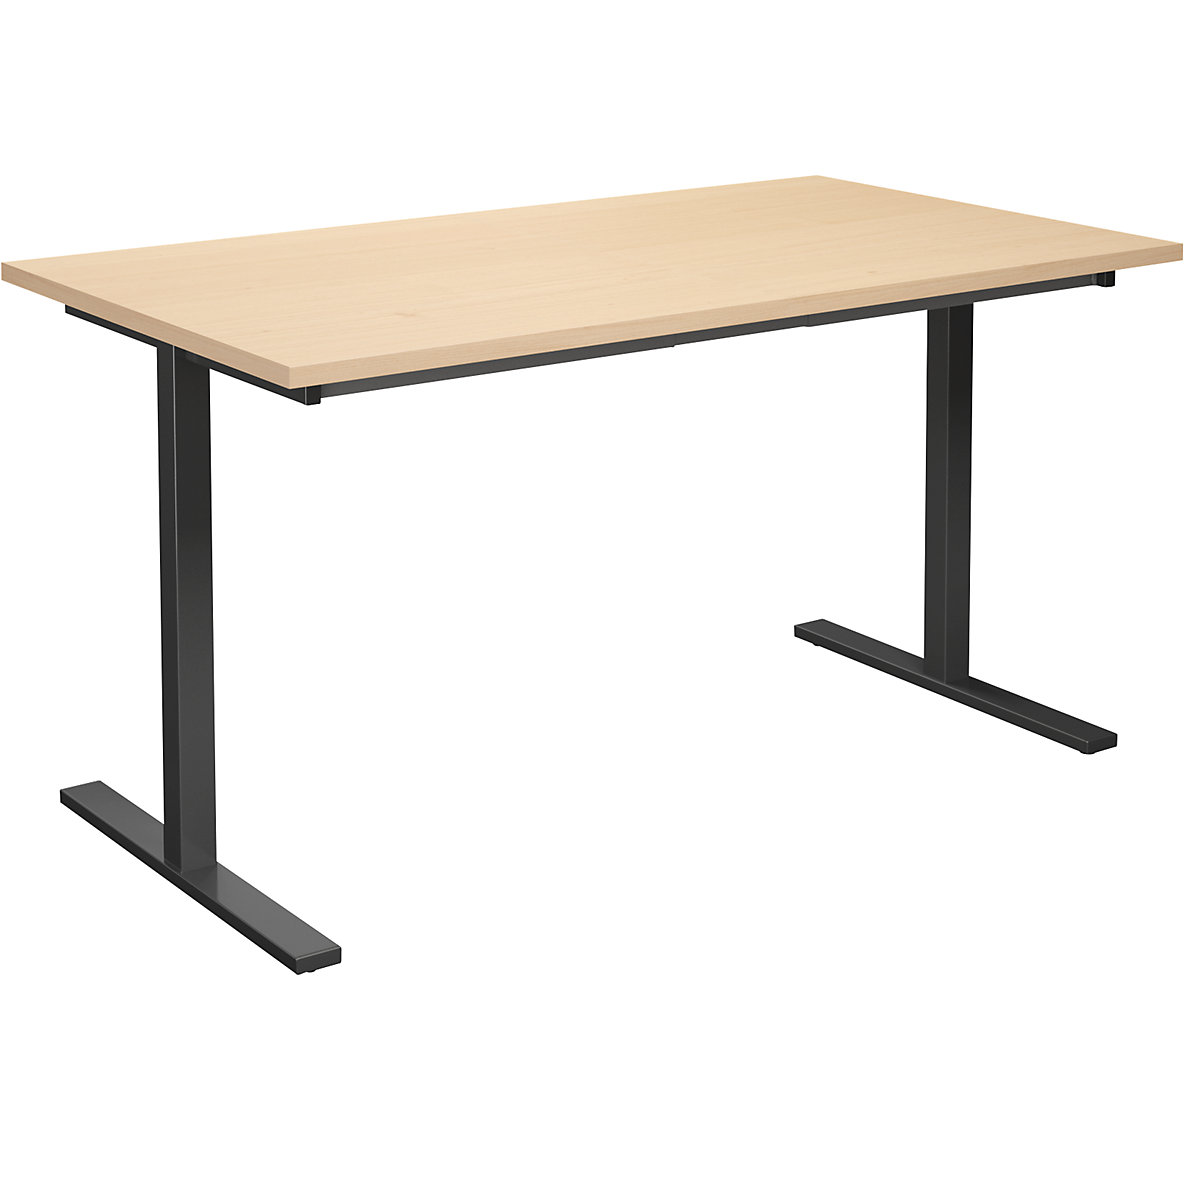 DUO-T multi-purpose desk, straight tabletop, WxD 1400 x 800 mm, birch, black-12